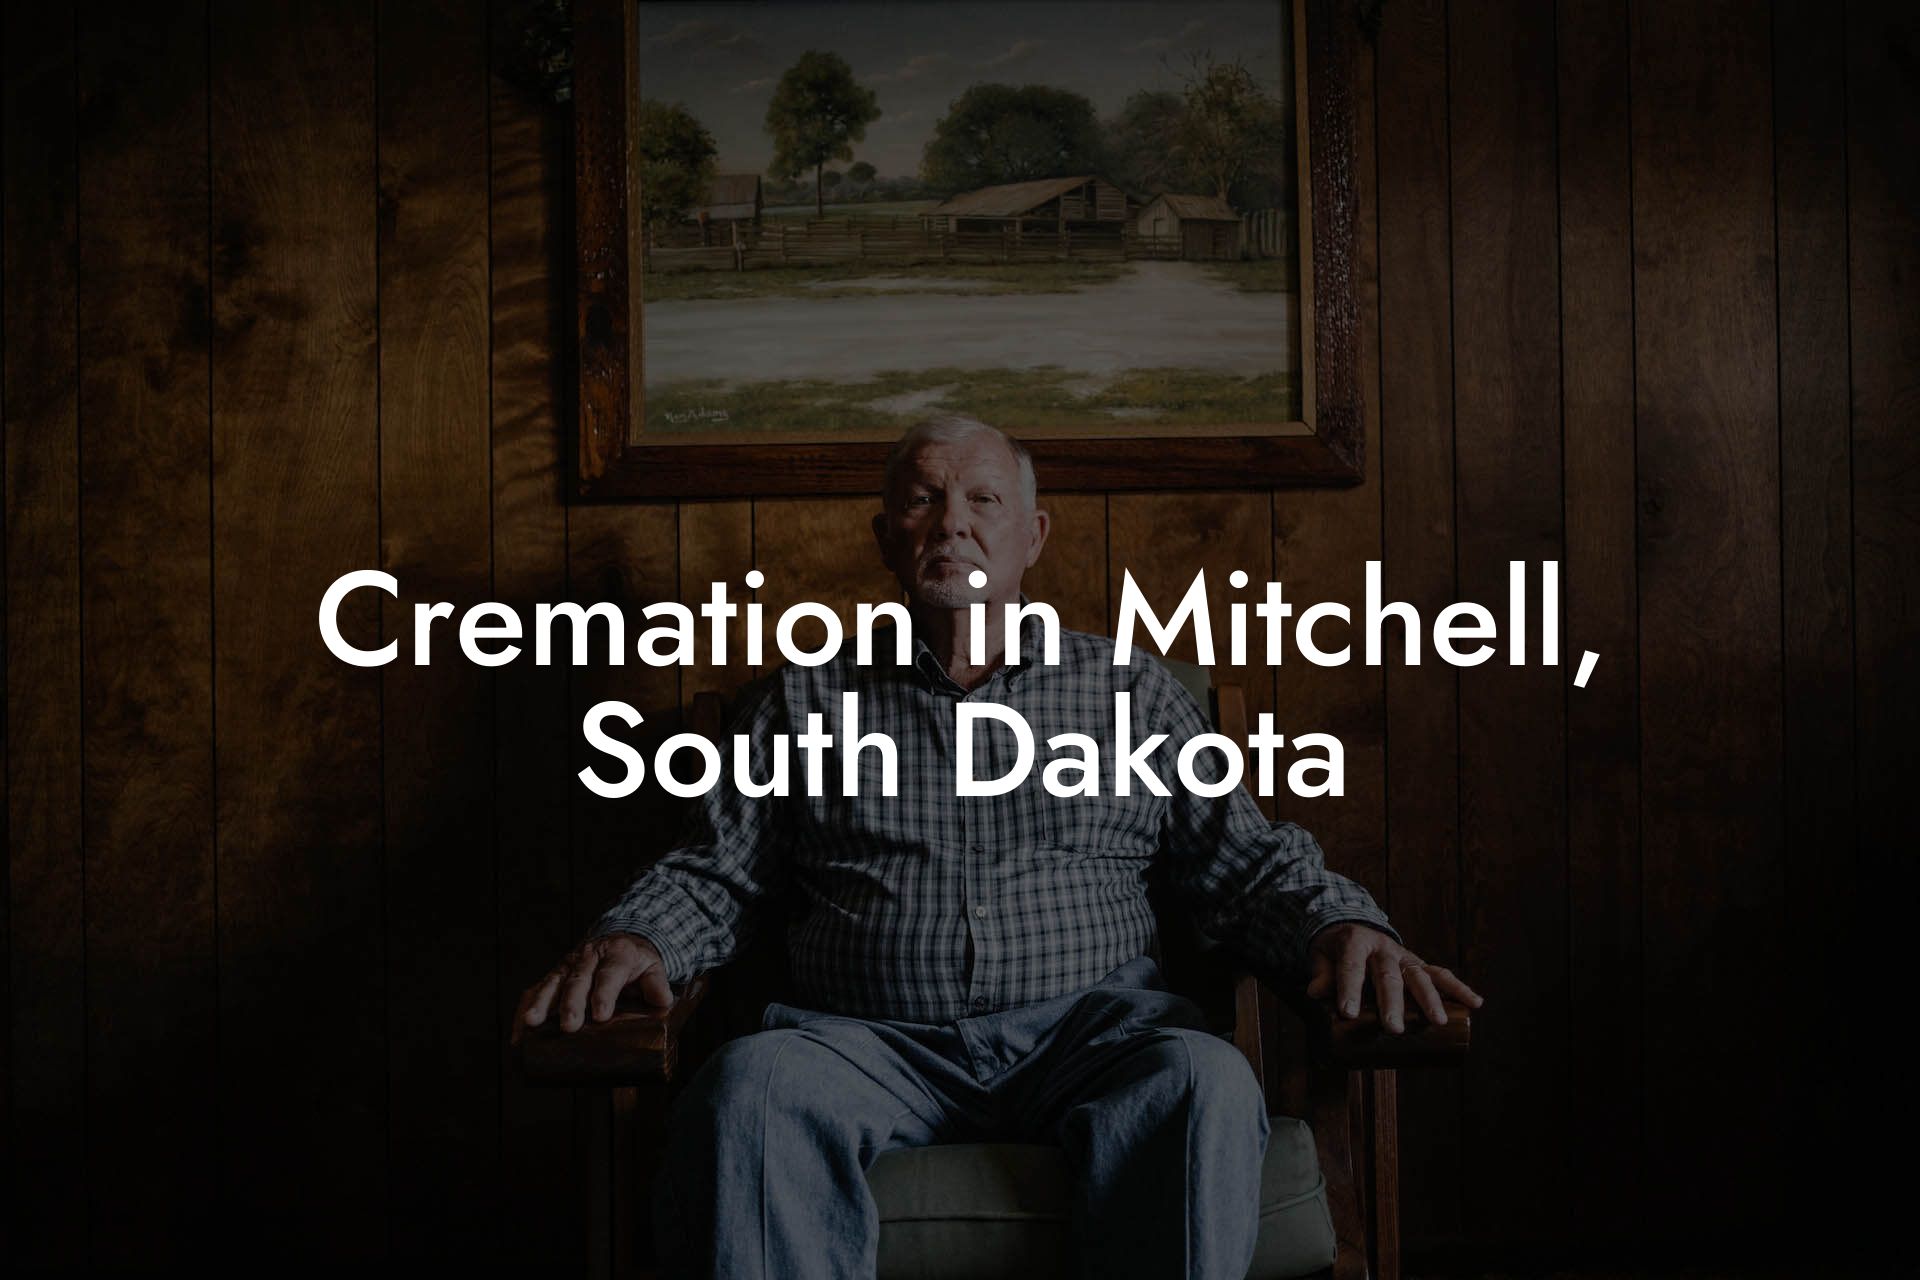 Cremation in Mitchell, South Dakota